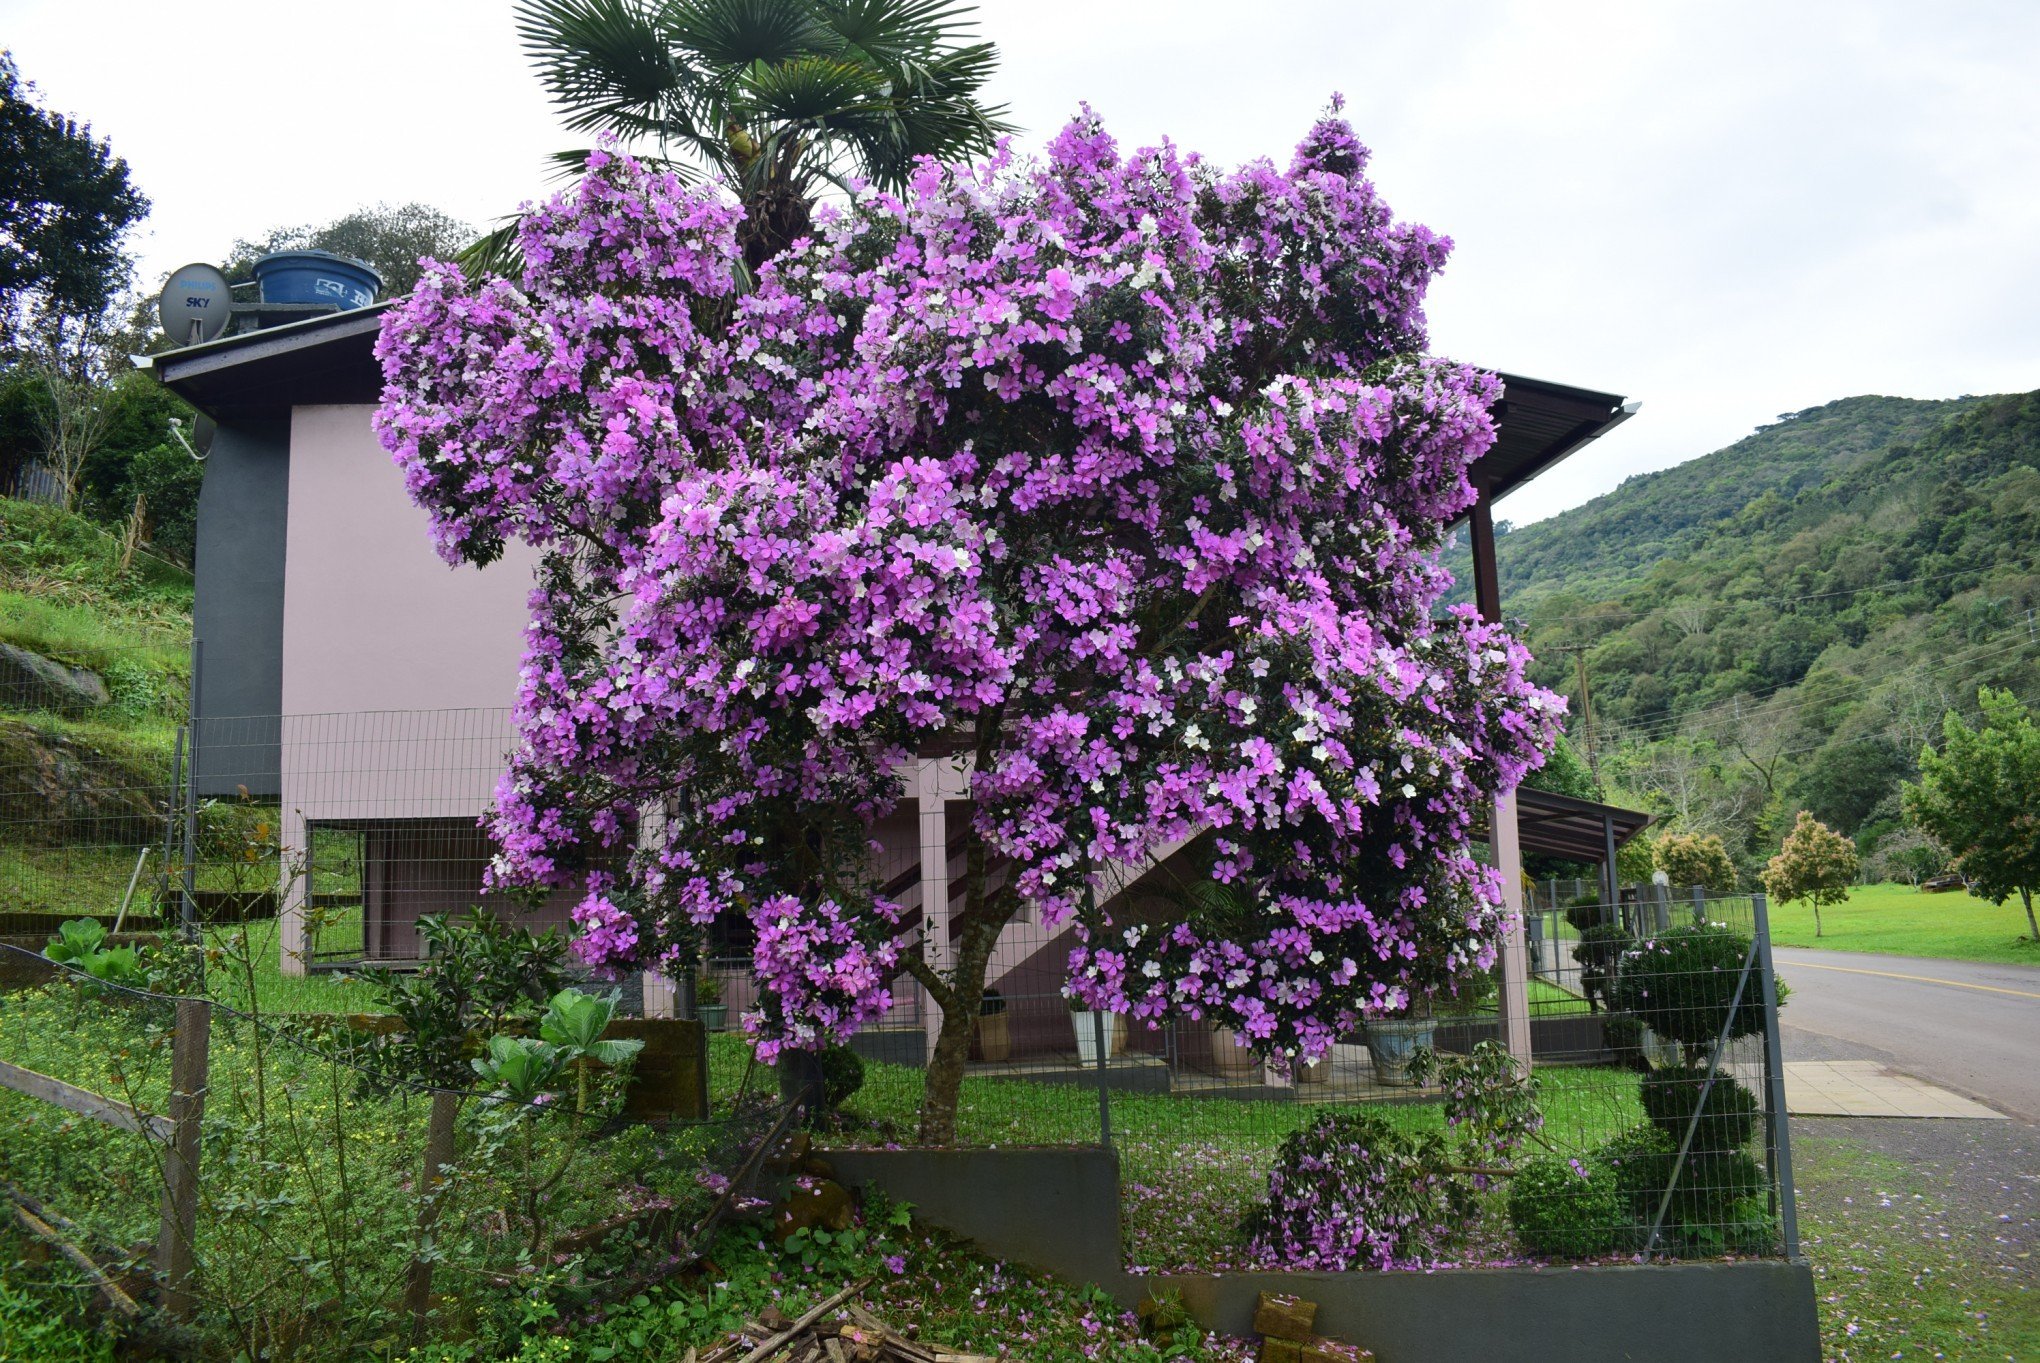 Manacá-da-serra: árvore tem flores que mudam de cor e possui forte apelo  paisagístico, Terra da Gente